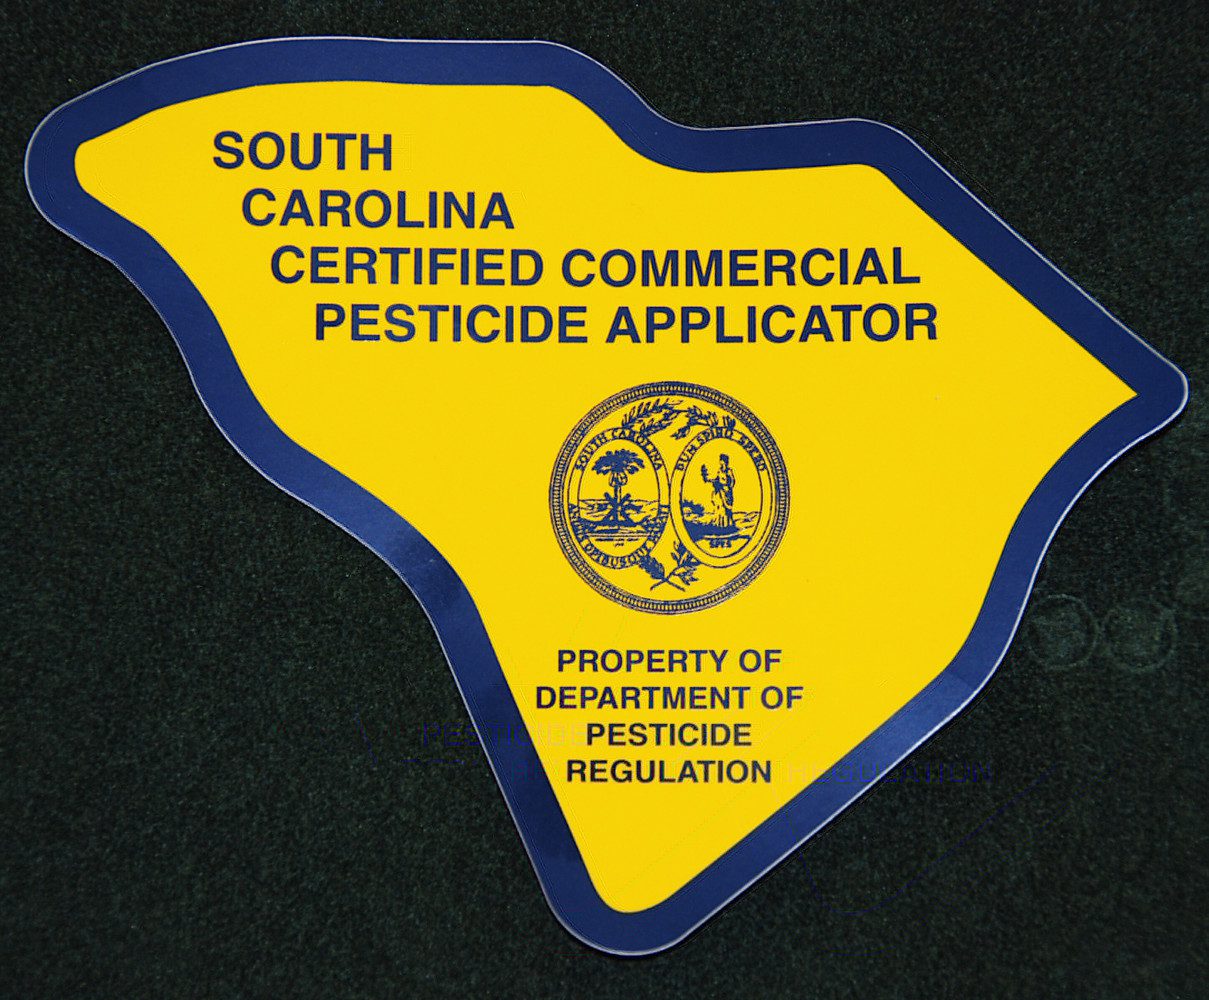 Certified pesticide applicator decal